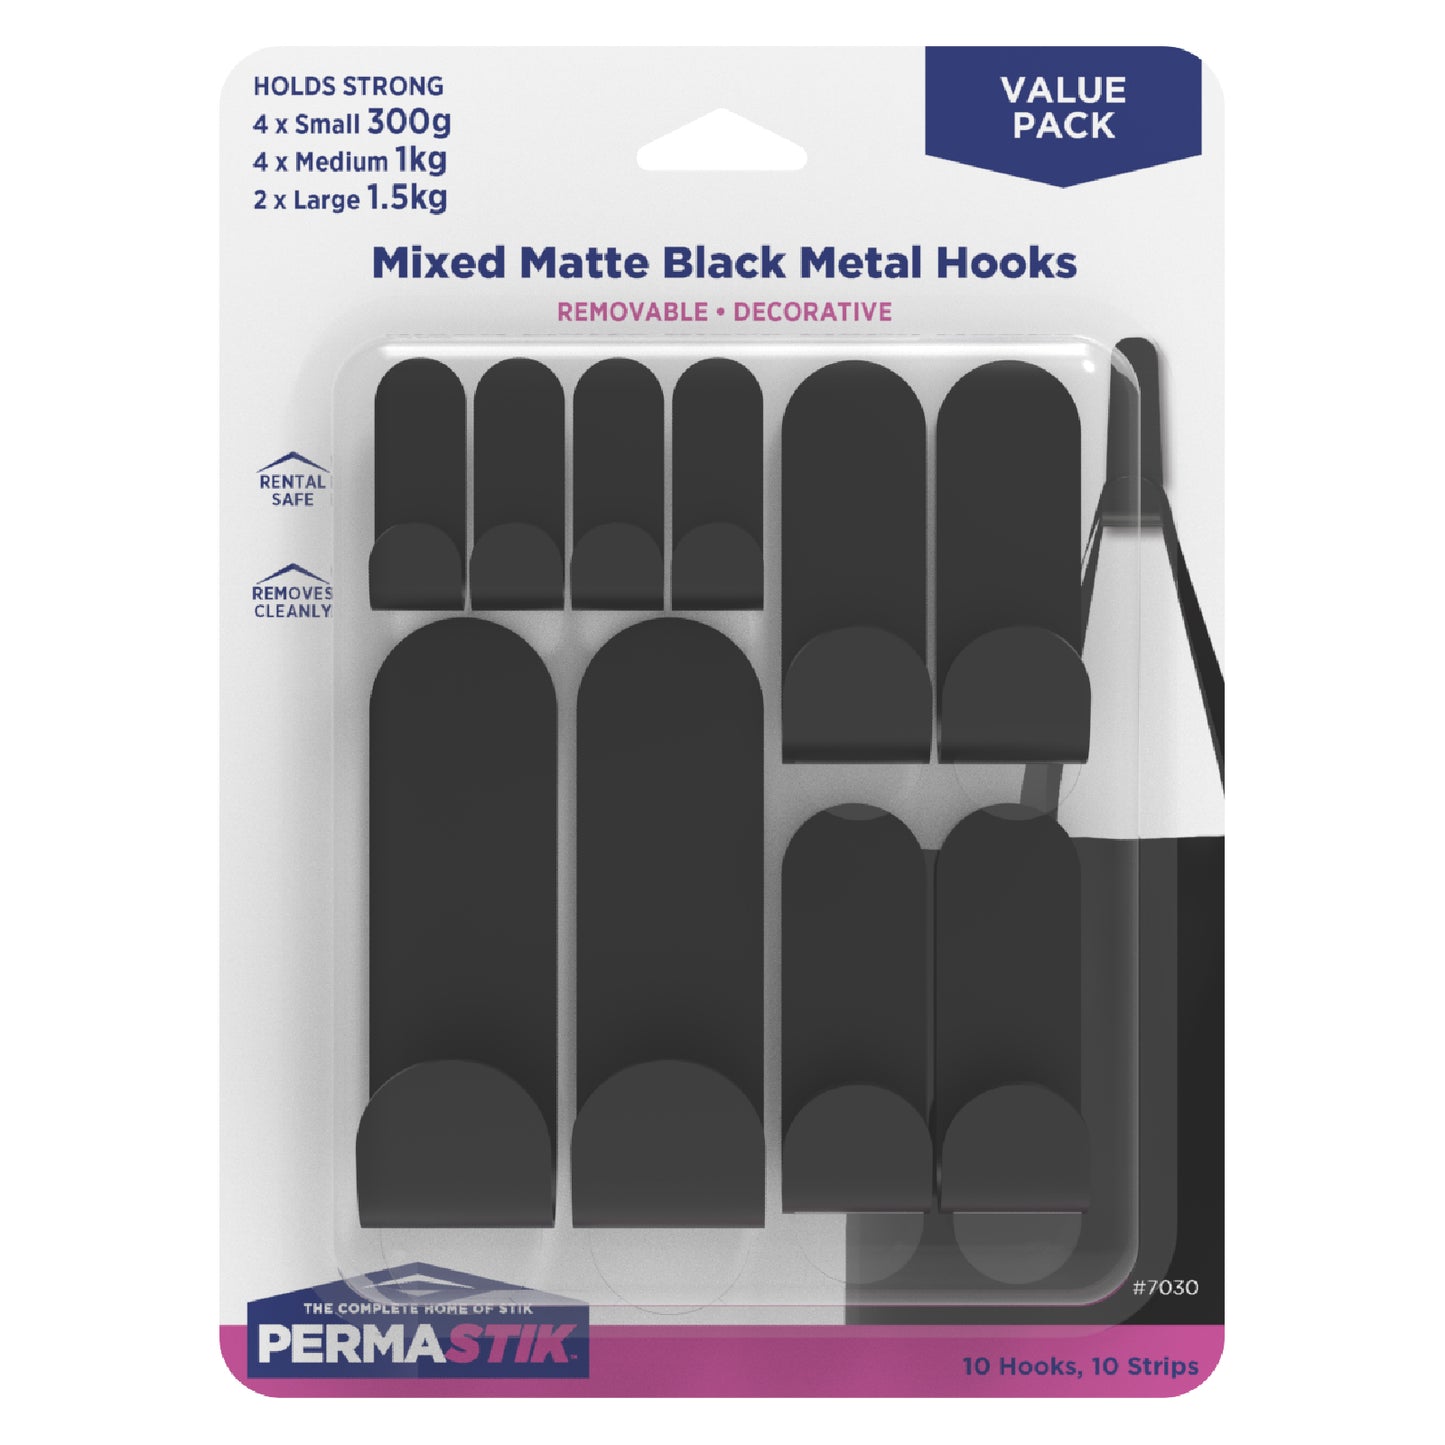 Mixed Matte Black Metal Hooks